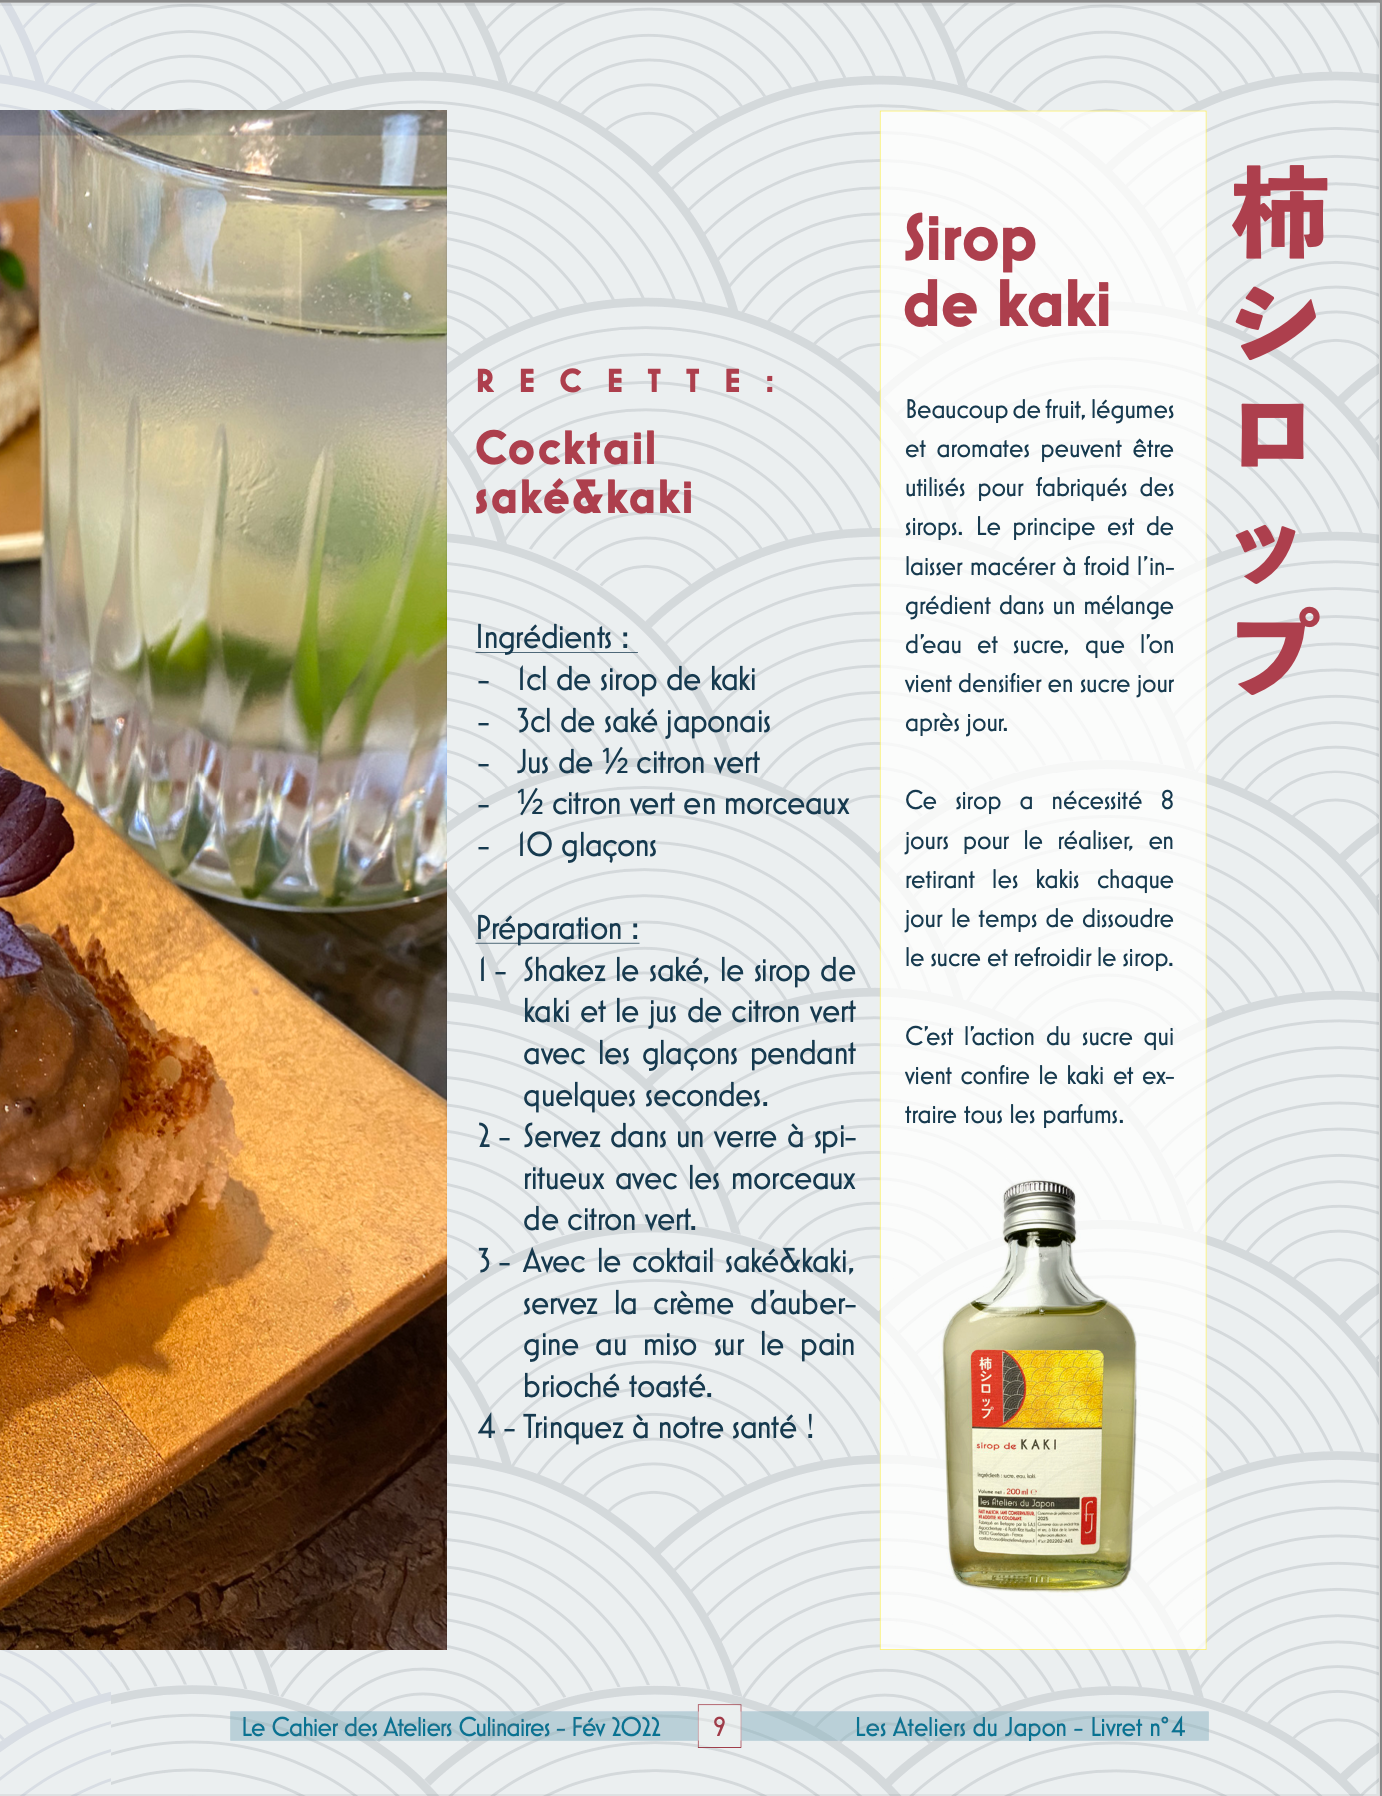 Sirop de kaki - recette cocktail saké et kaki - Les Ateliers du Japon